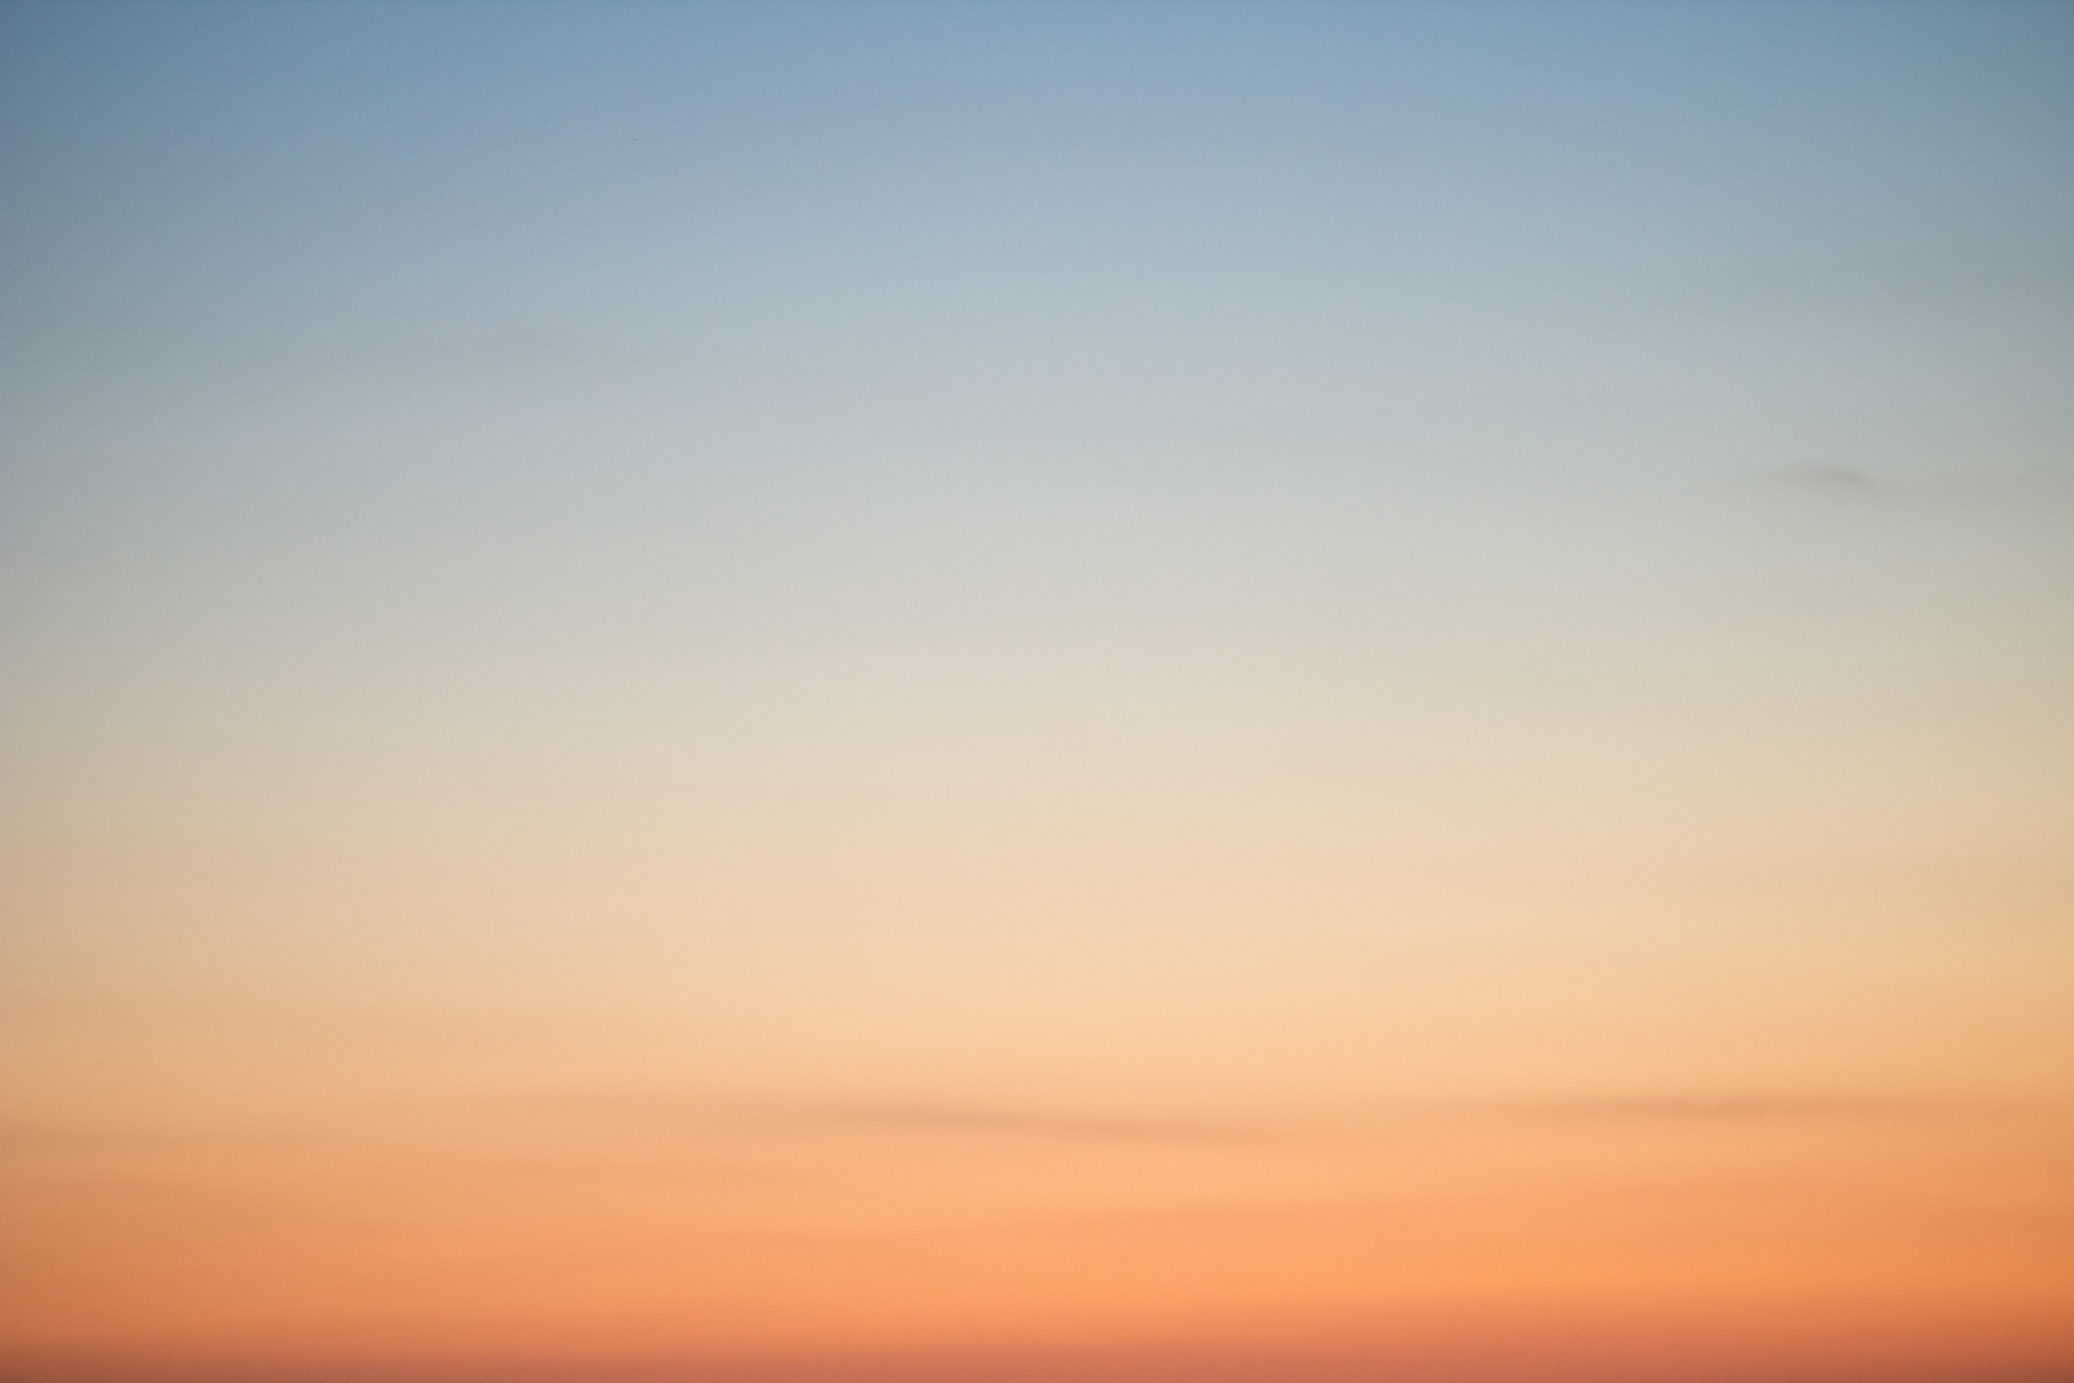 Sunset background